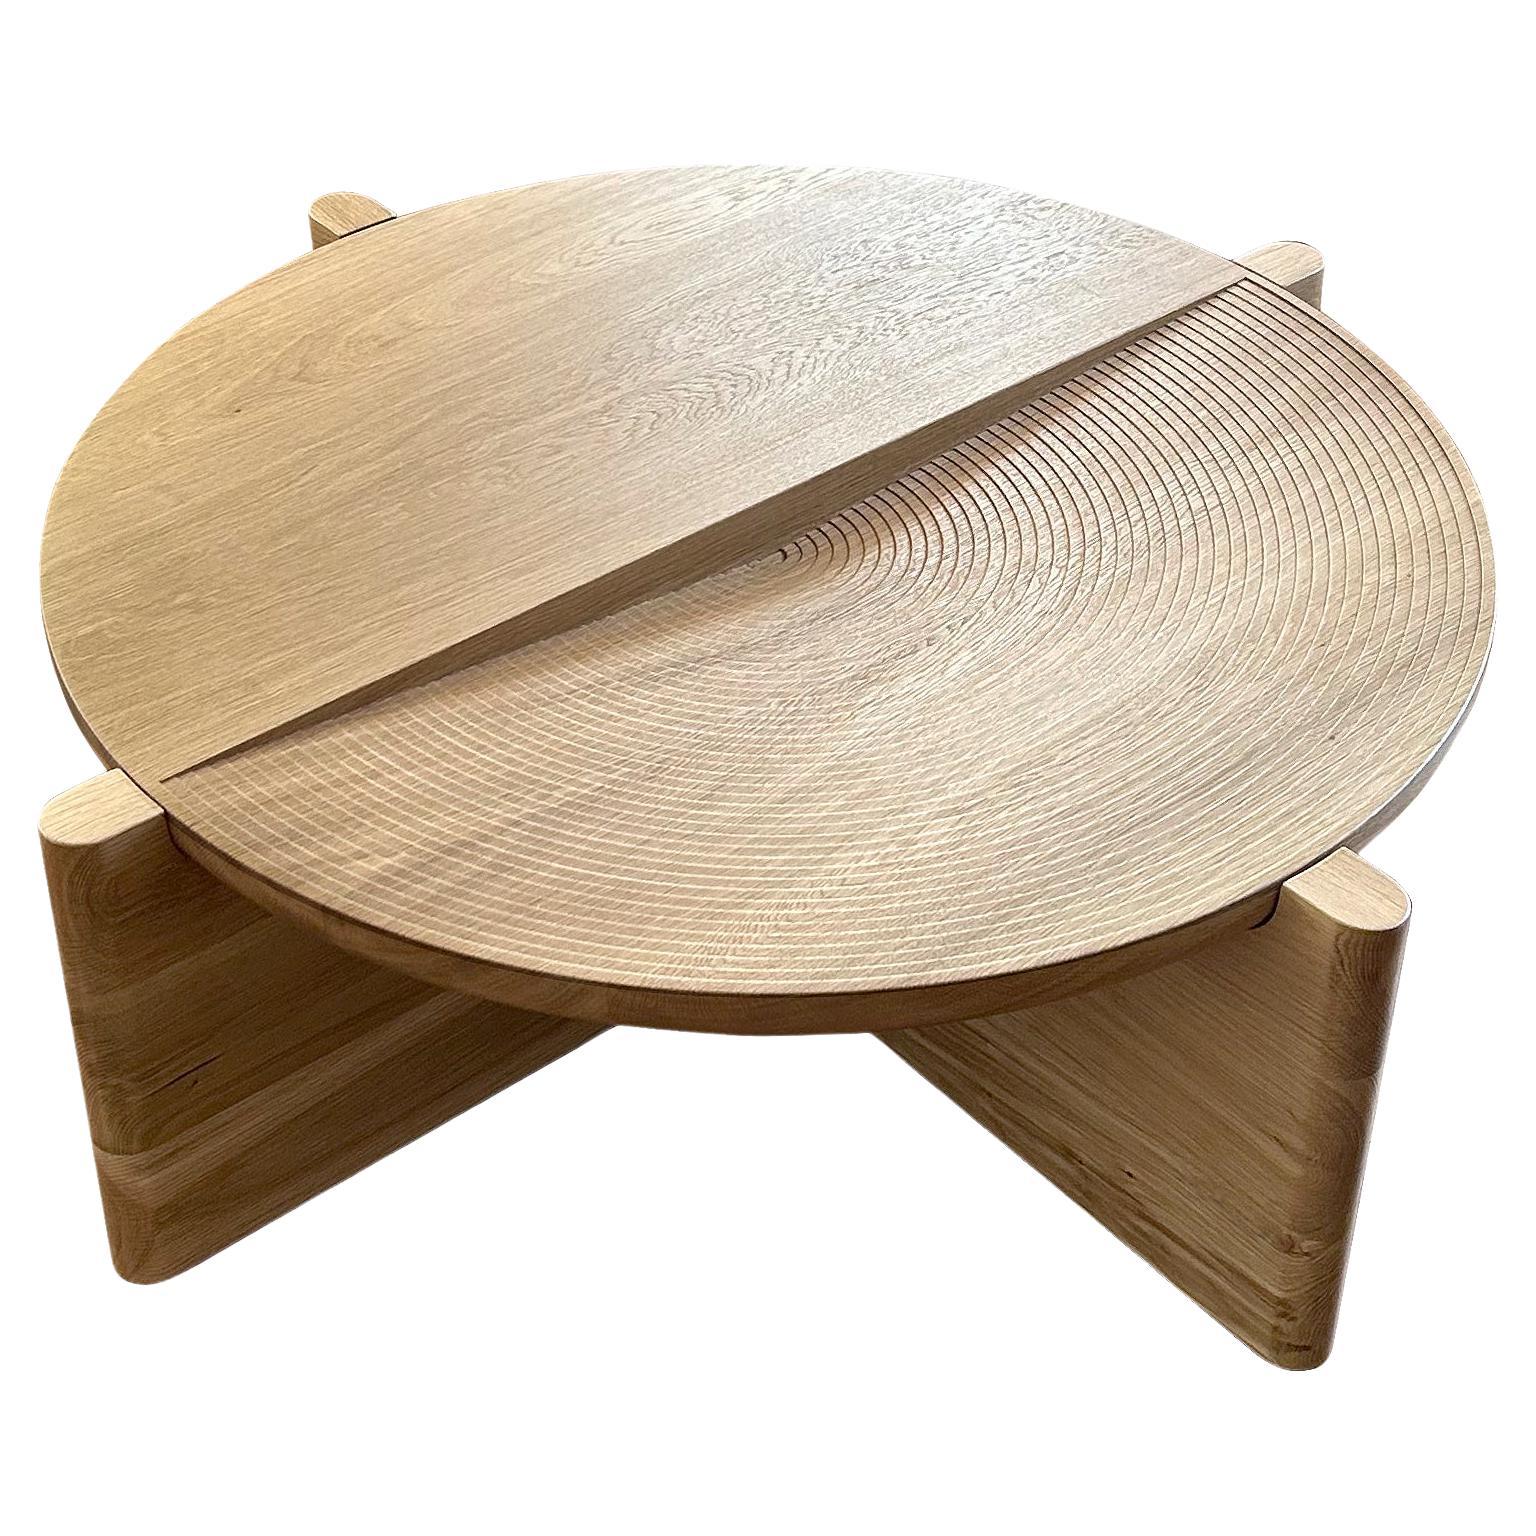 Table basse Arkhe ronde sculpturale moderne par Fulden Topaloglu